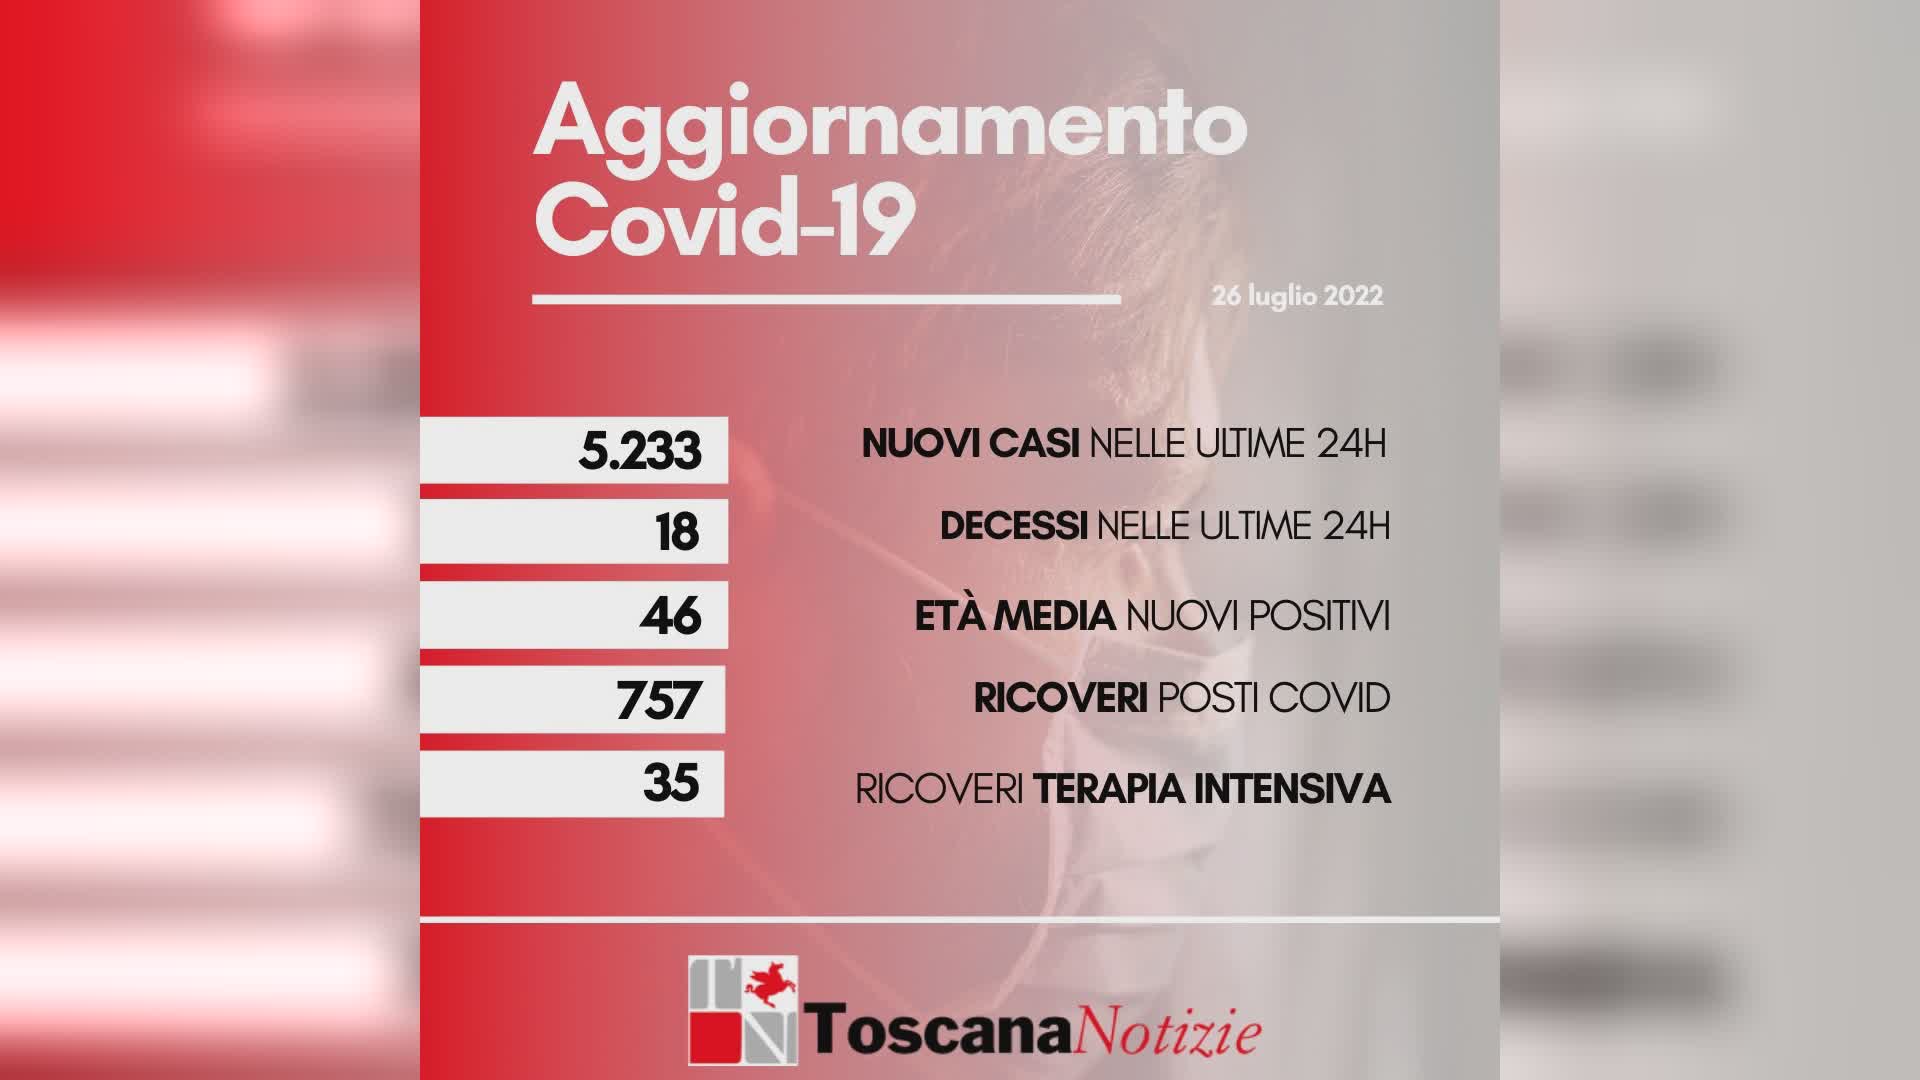 Coronavirus, 5.233 nuovi casi in Toscana, 18 i decessi